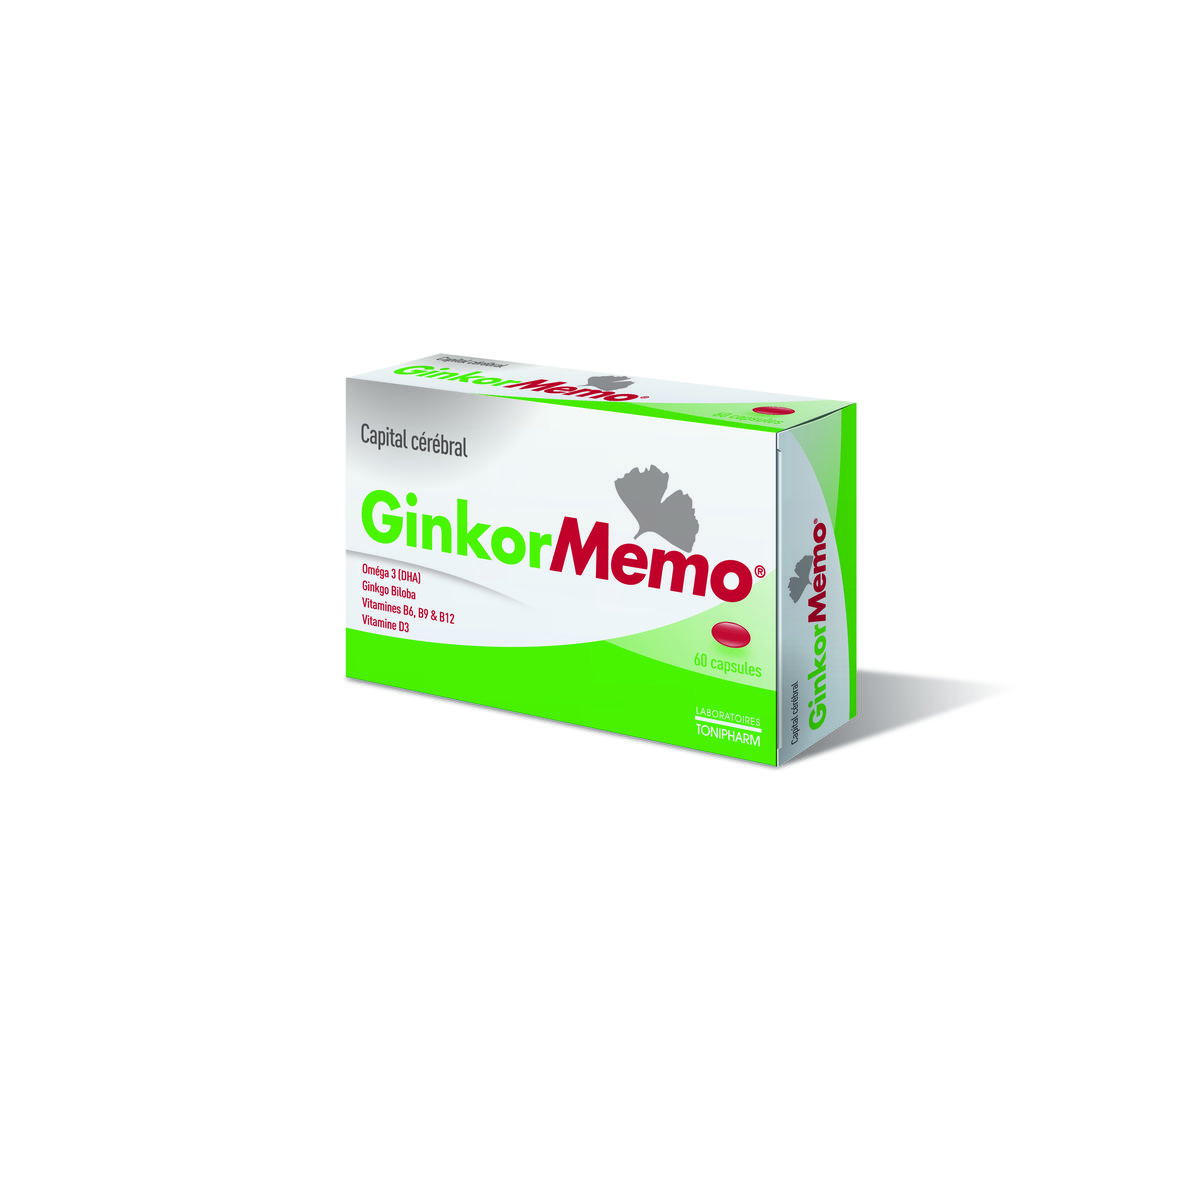 Ginkor Memo 60 capsules